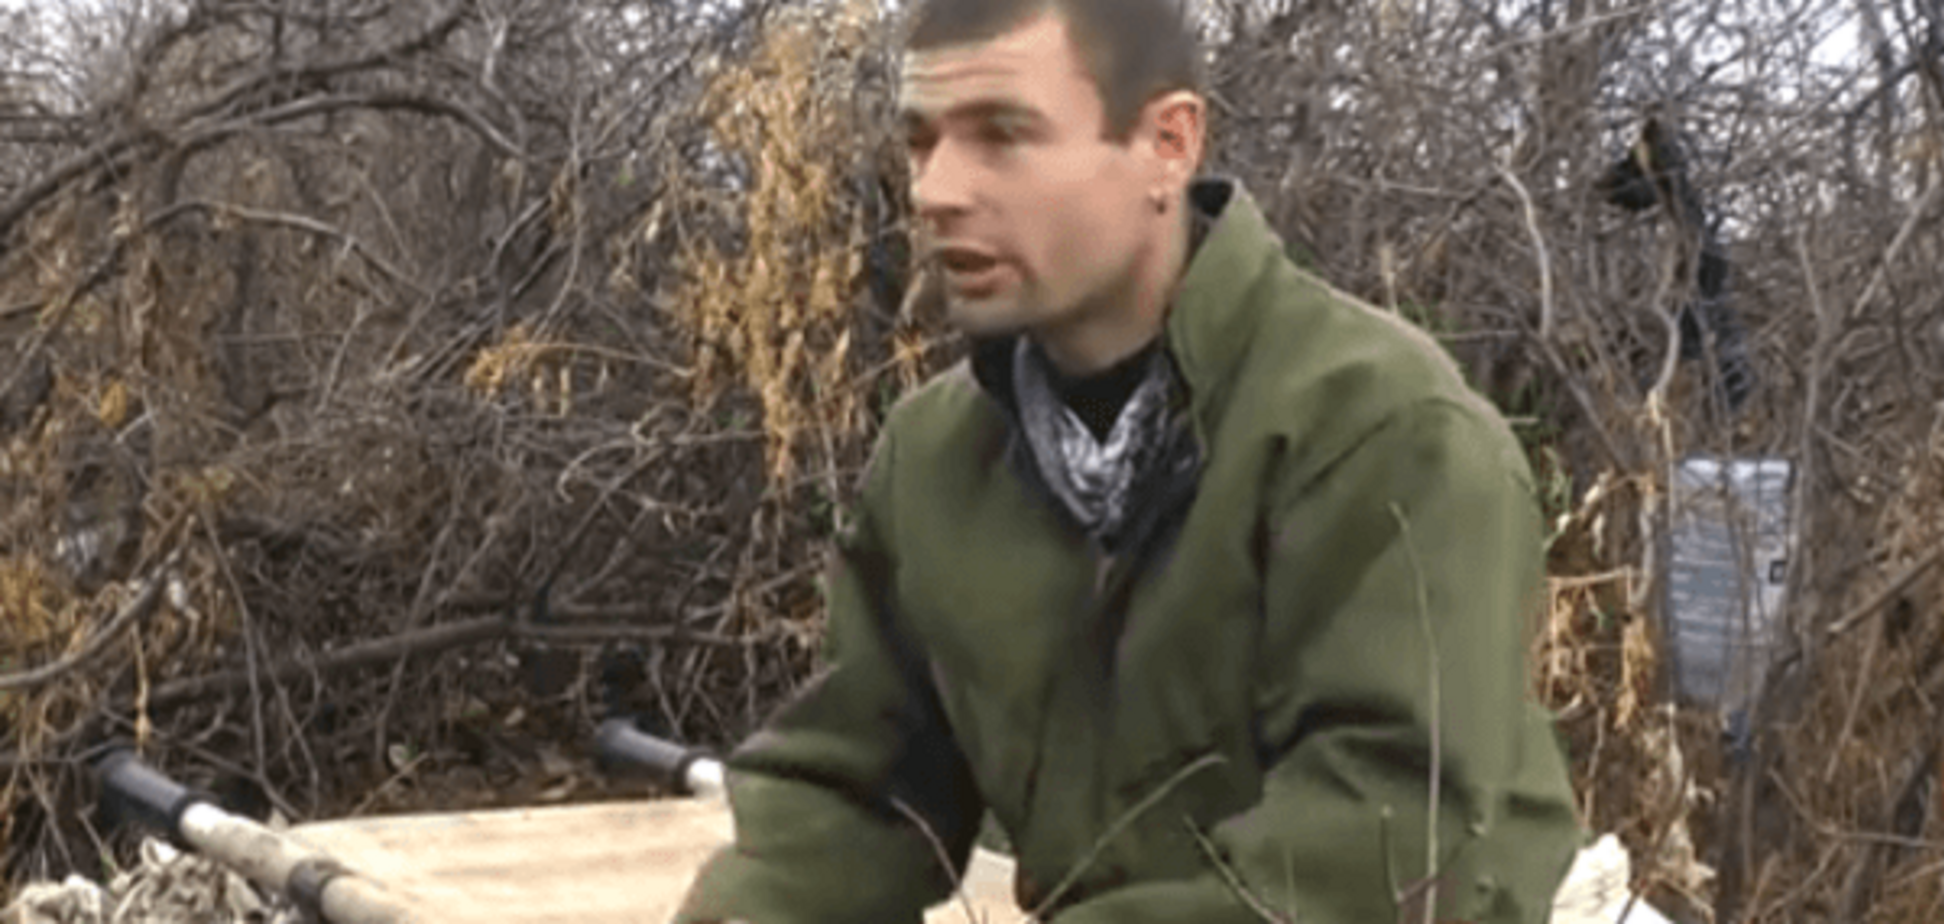 Я – украинец! Луганчанин выборол право воевать снайпером в зоне АТО: видеофакт